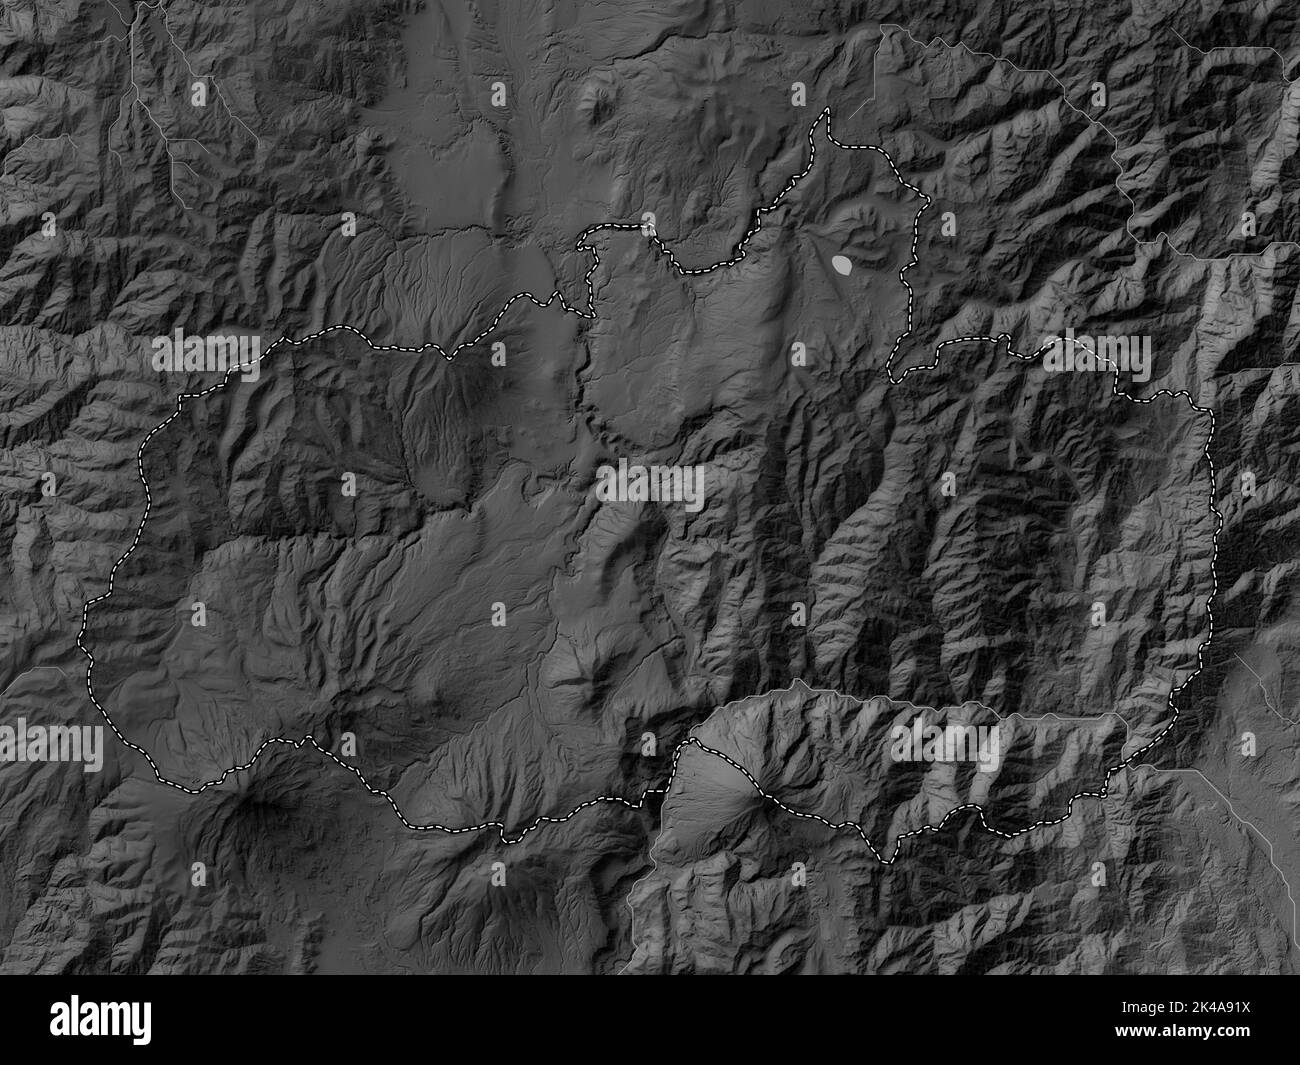 Tungurahua, province de l'Équateur. Carte d'altitude en niveaux de gris avec lacs et rivières Banque D'Images